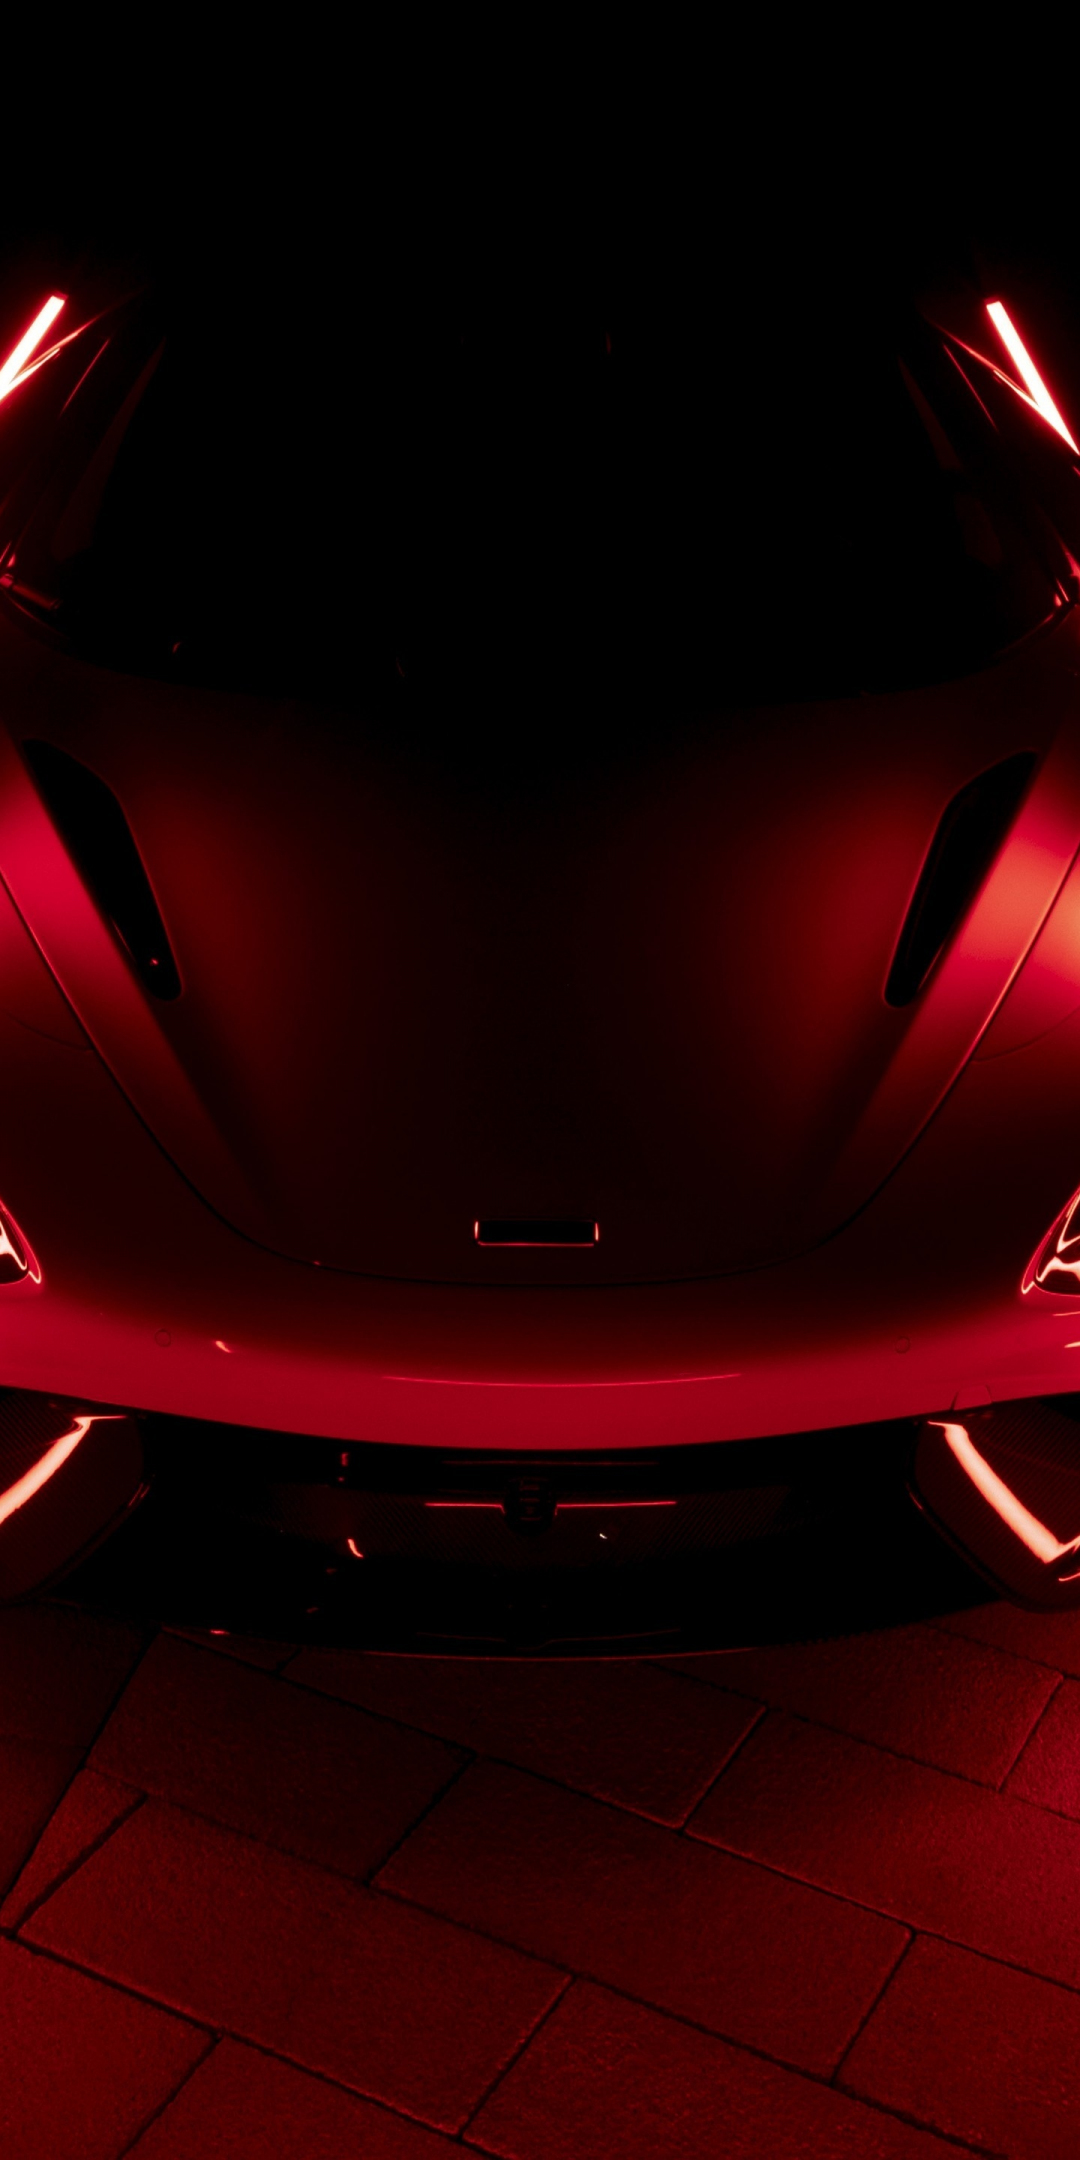 2021 McLaren 765LT, dark, red-glow, car, 1080x2160 wallpaper